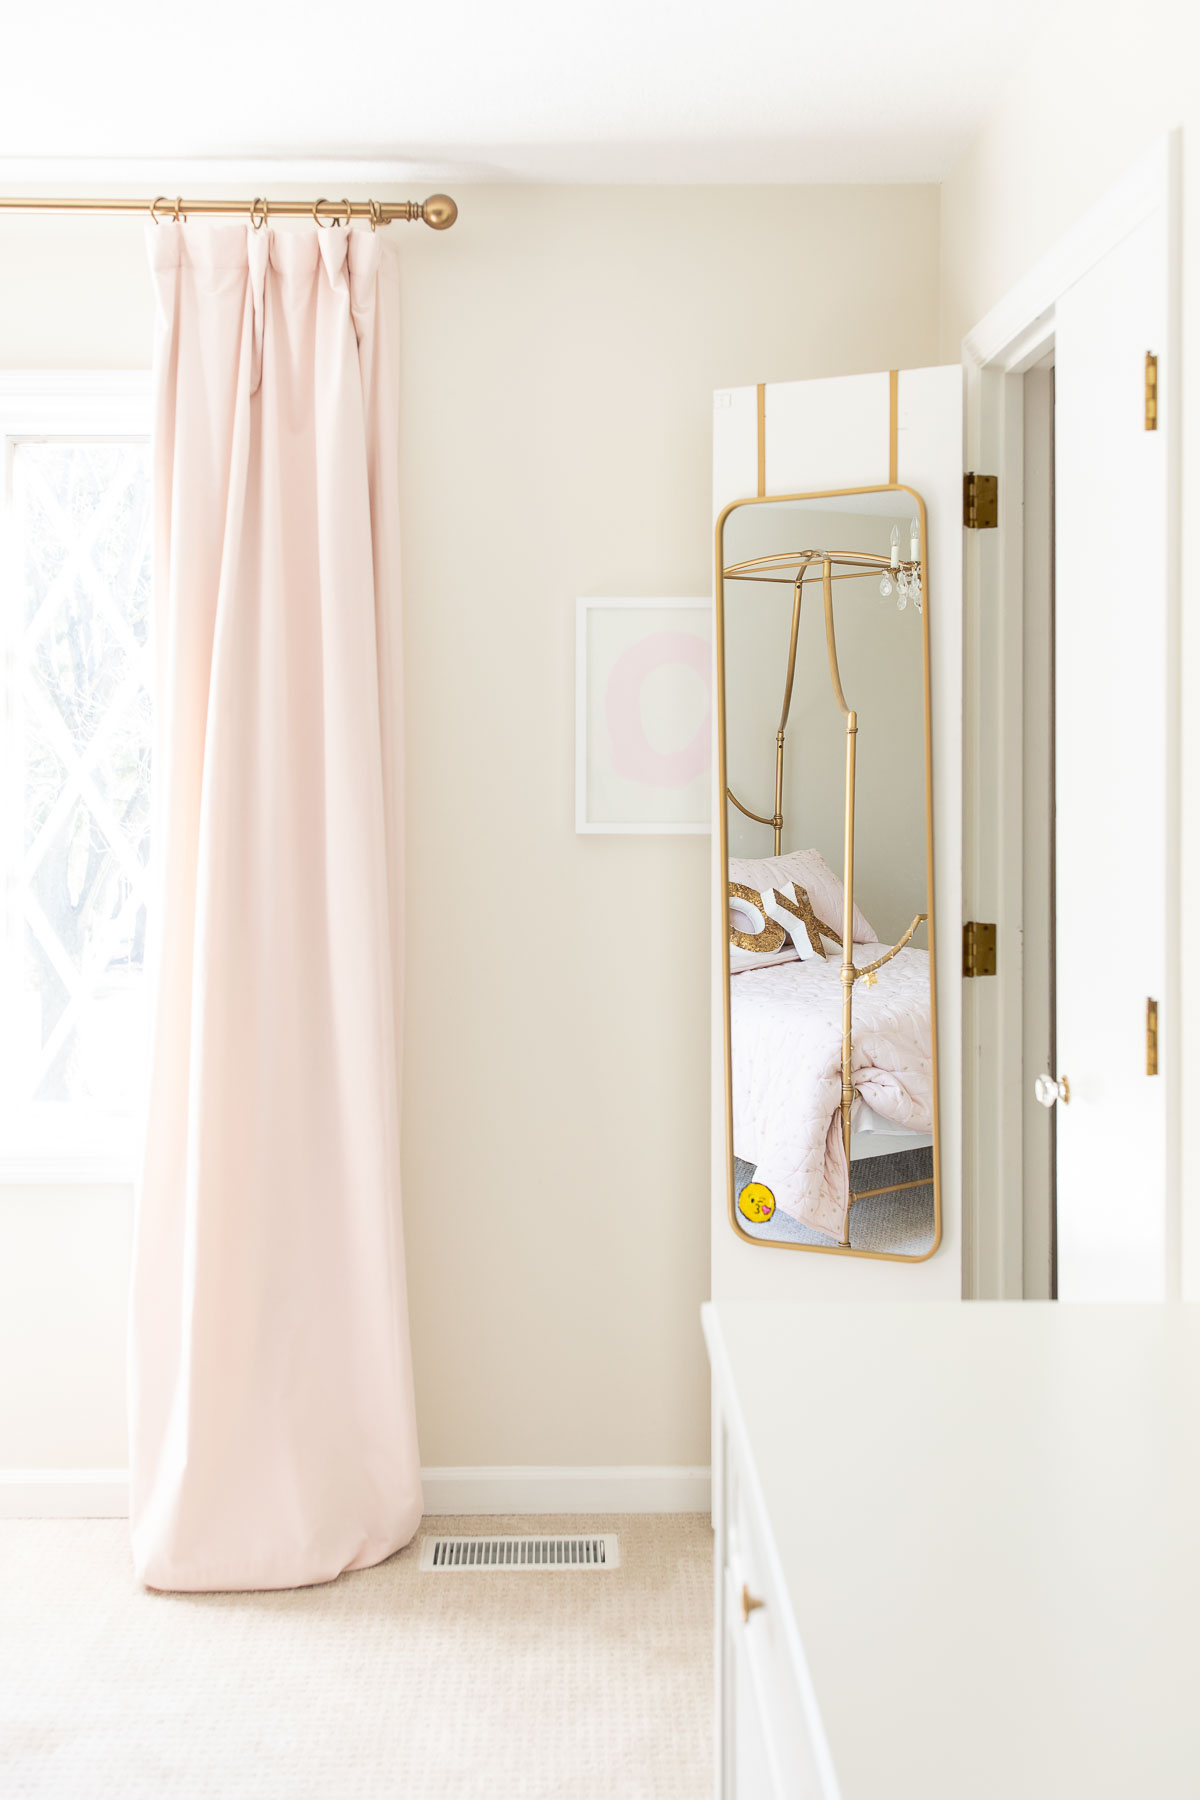 A pink tween bedroom with a gold mirror inside the closet door